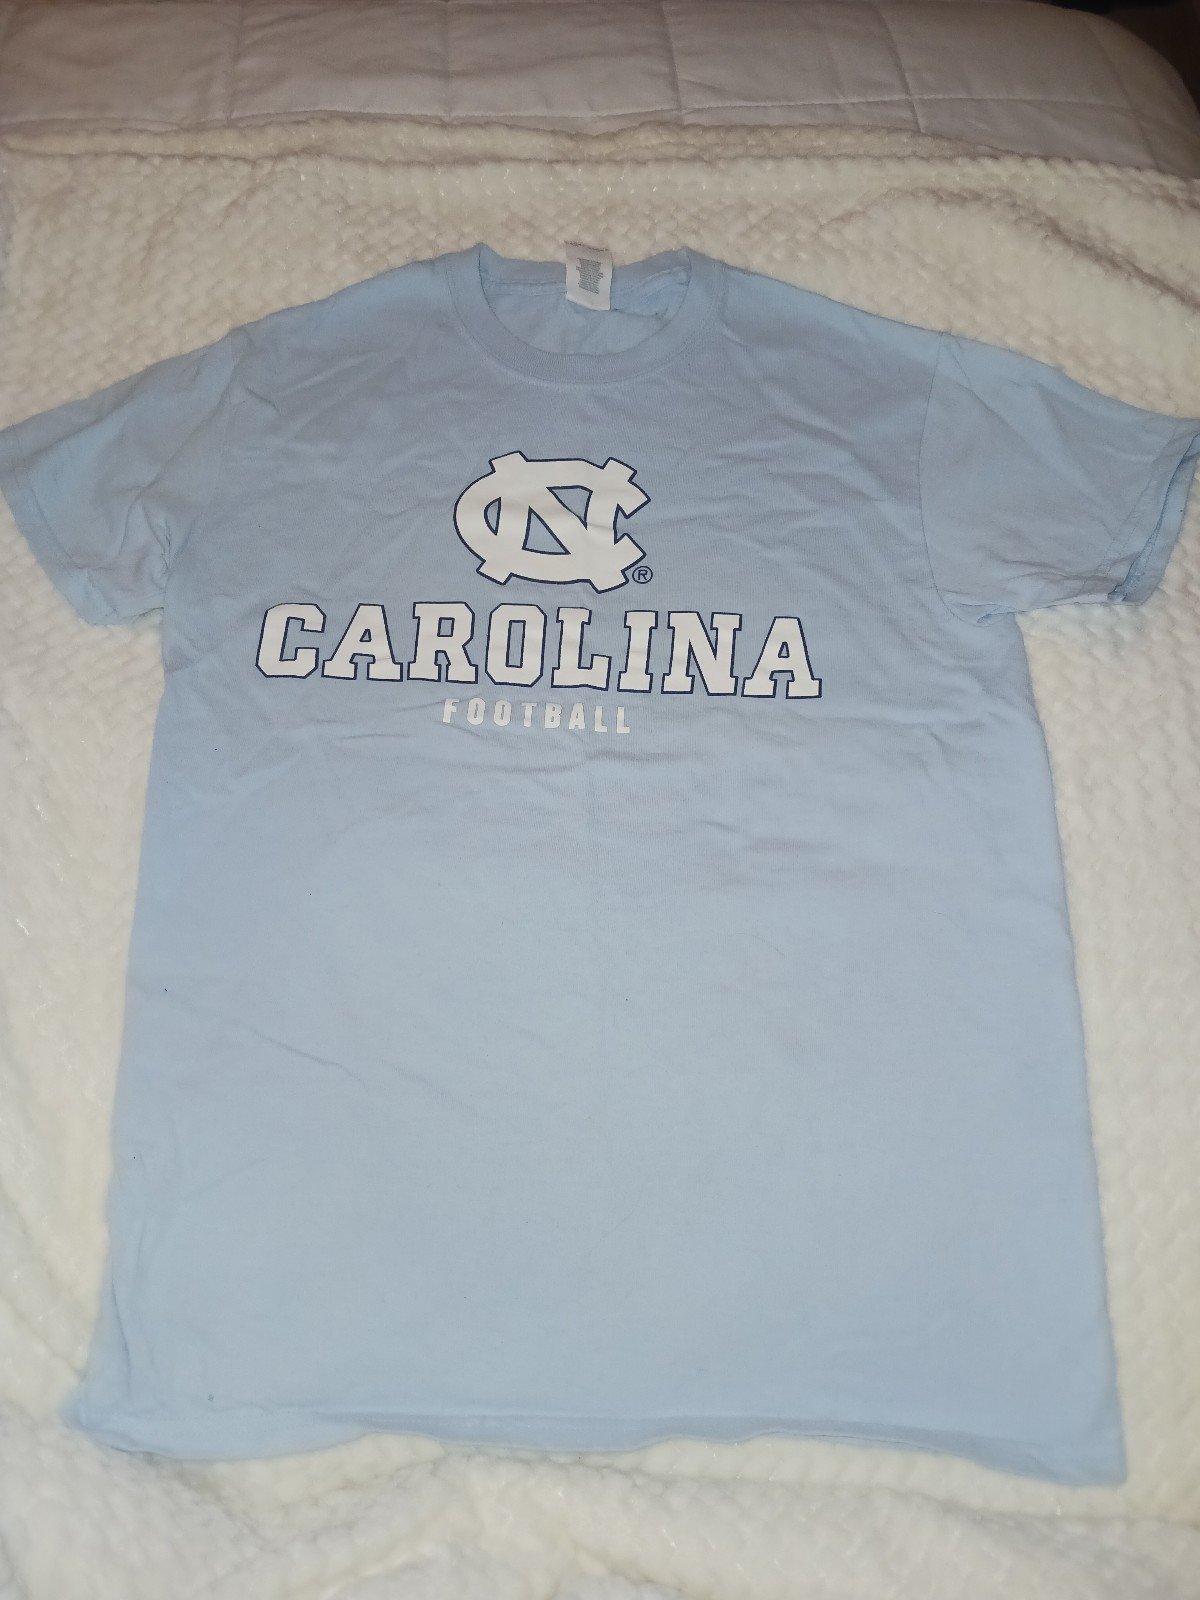 Carolina team tshirt 0H0j0SpMs